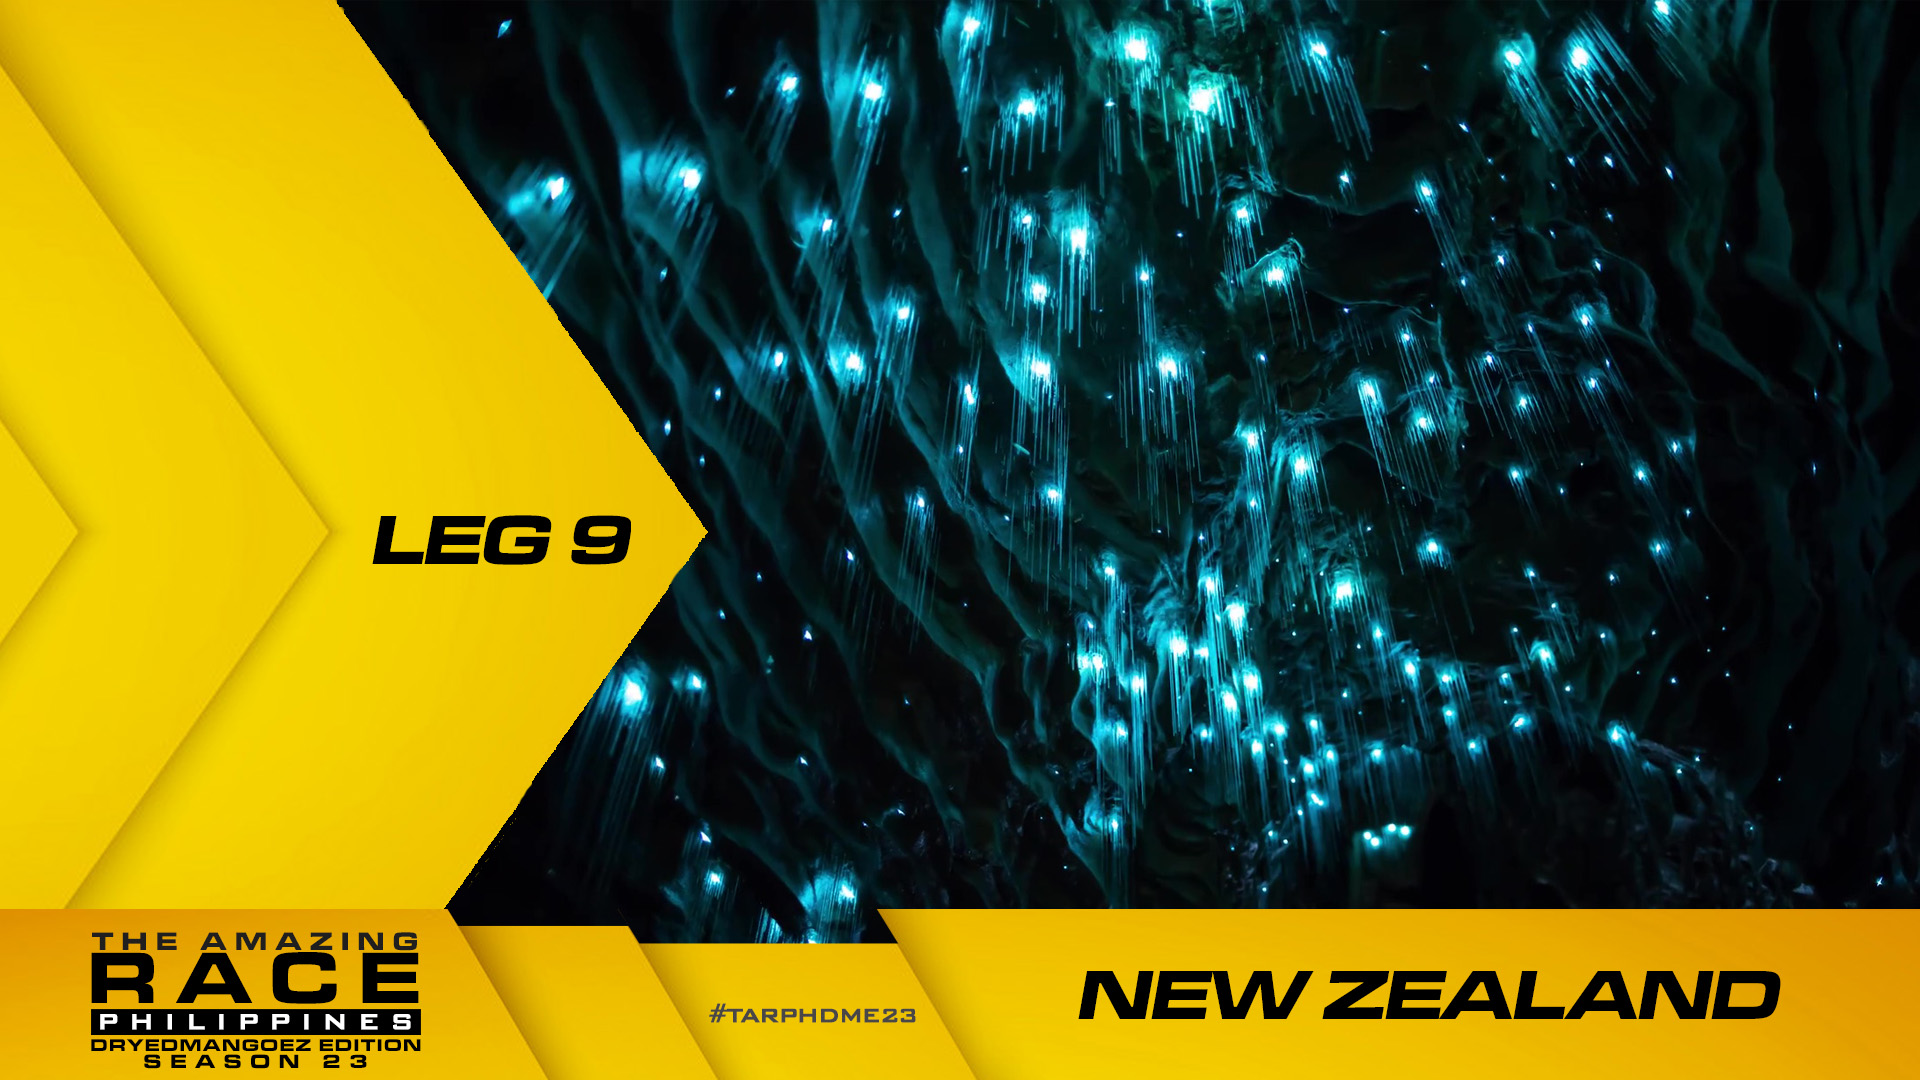 The Amazing Race Philippines: DryedMangoez Edition 23, Leg 9 – New Zealand